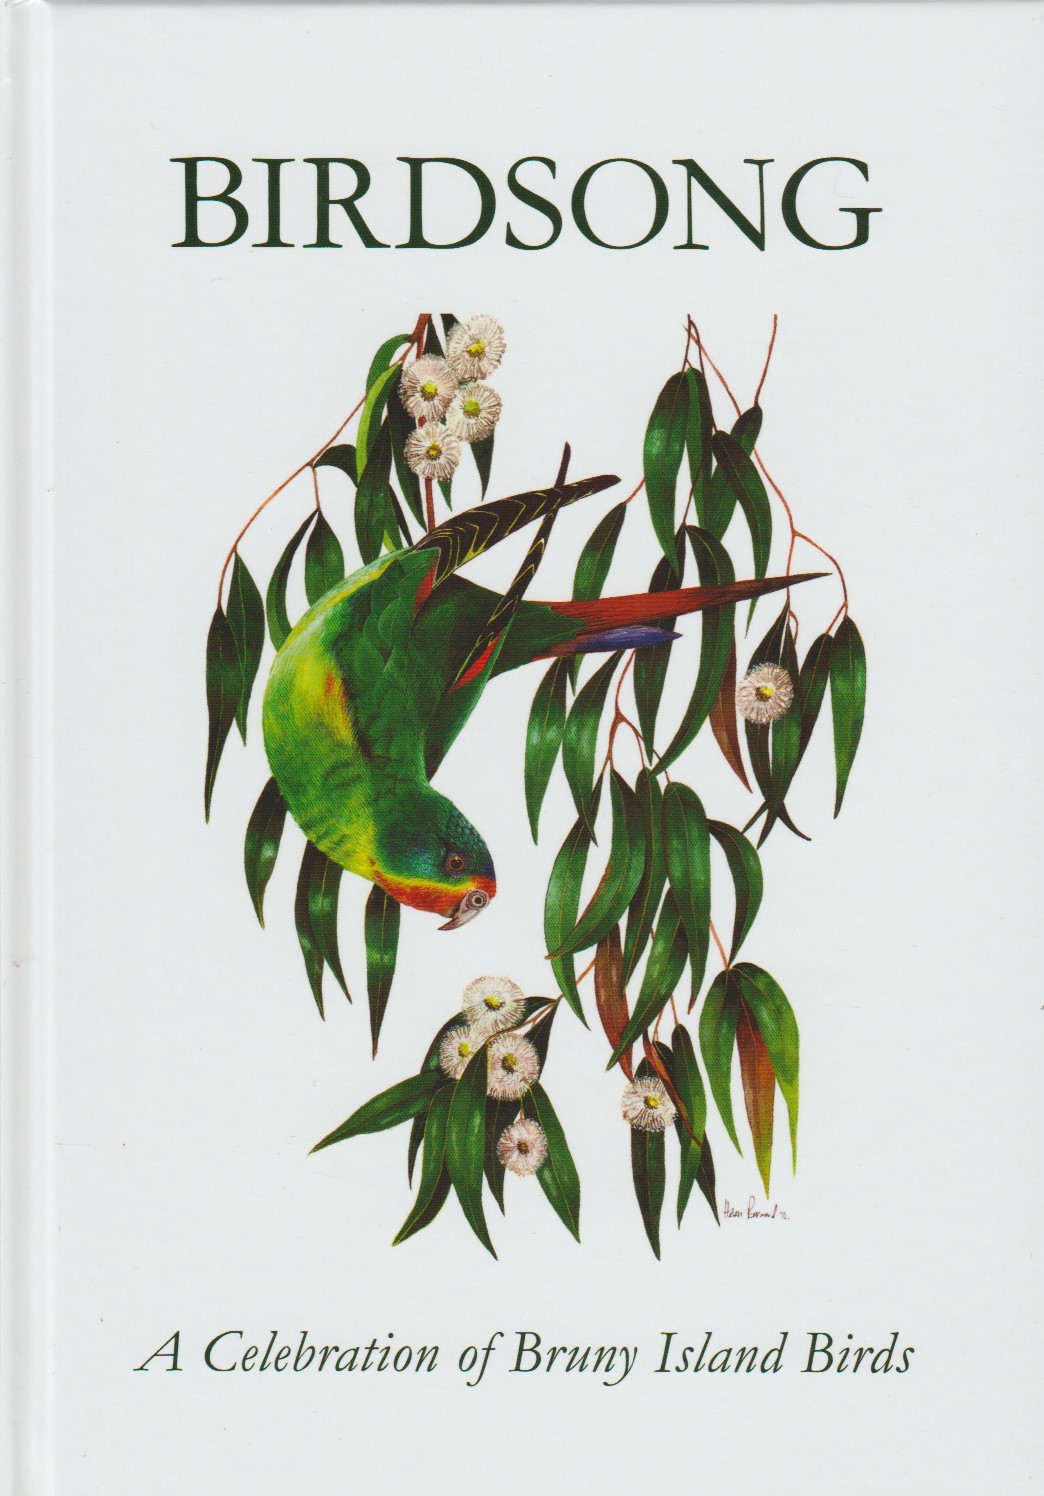 Birdsong - a Celebration of Bruny Island Birds